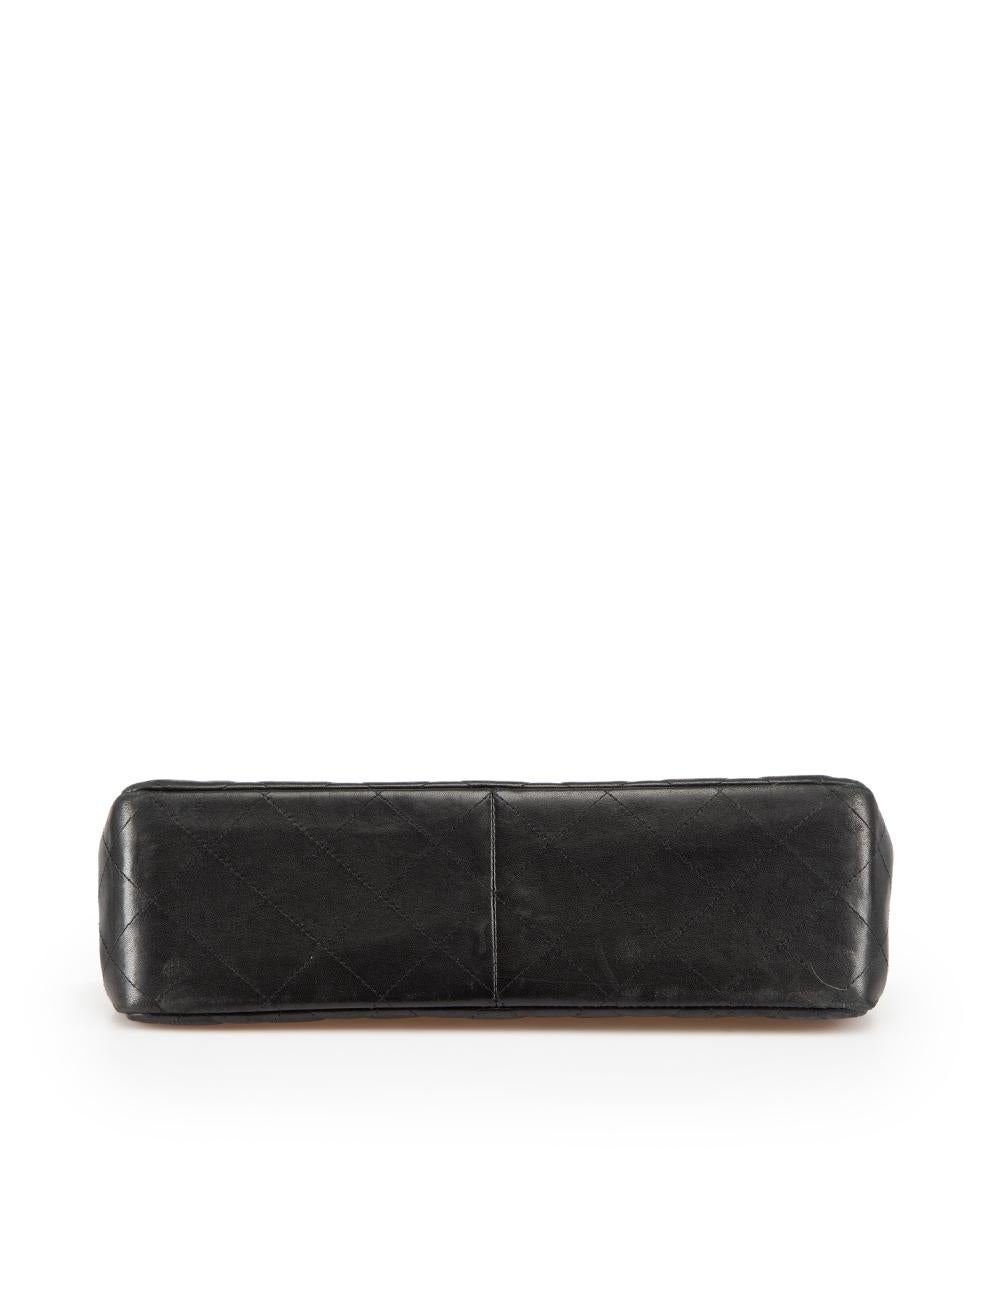 Women's Chanel So Black Lambskin Jumbo Double Flap Bag